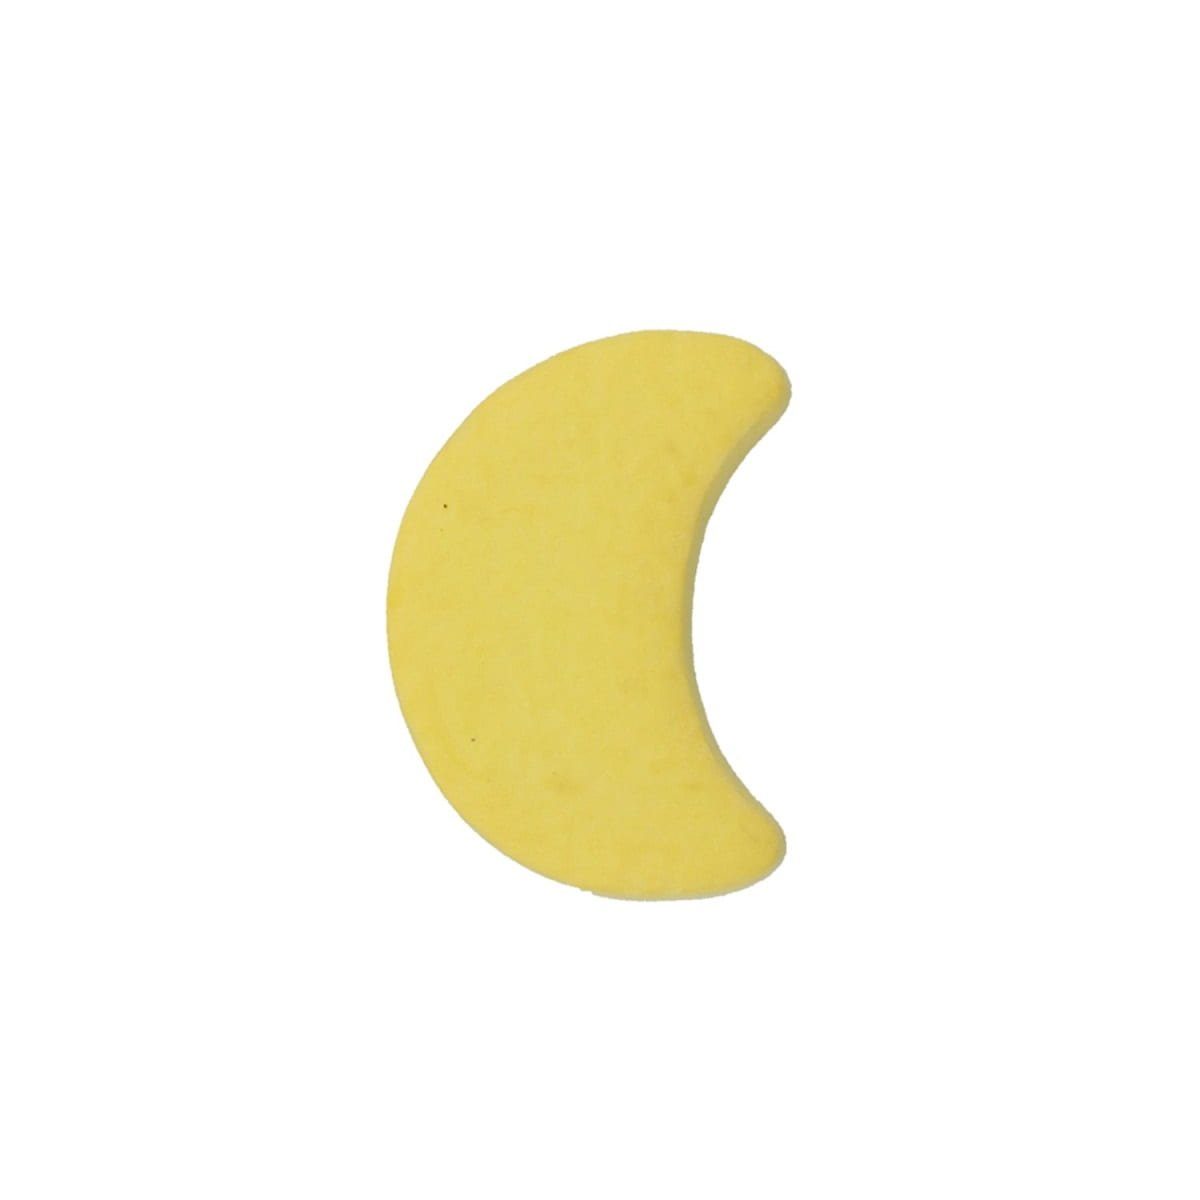 MS Beschläge Türbeschlag Möbelknopf Kindermöbelknopf Gelber Modell Mond